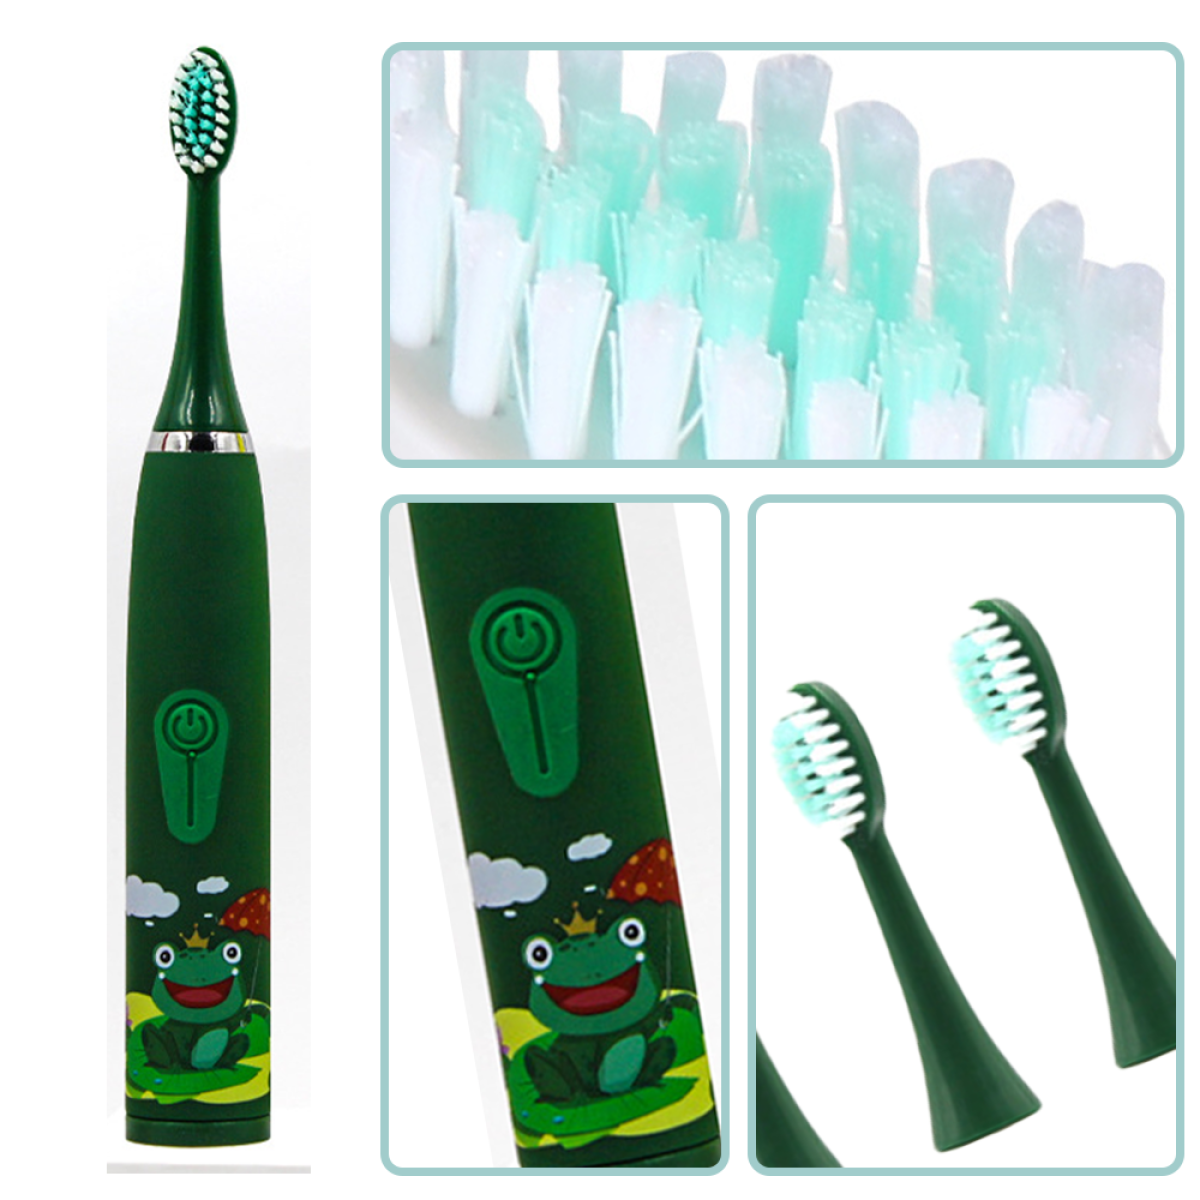 ELKUAIE 4 Reinigungsstufen green Elektrische Zahnbürste